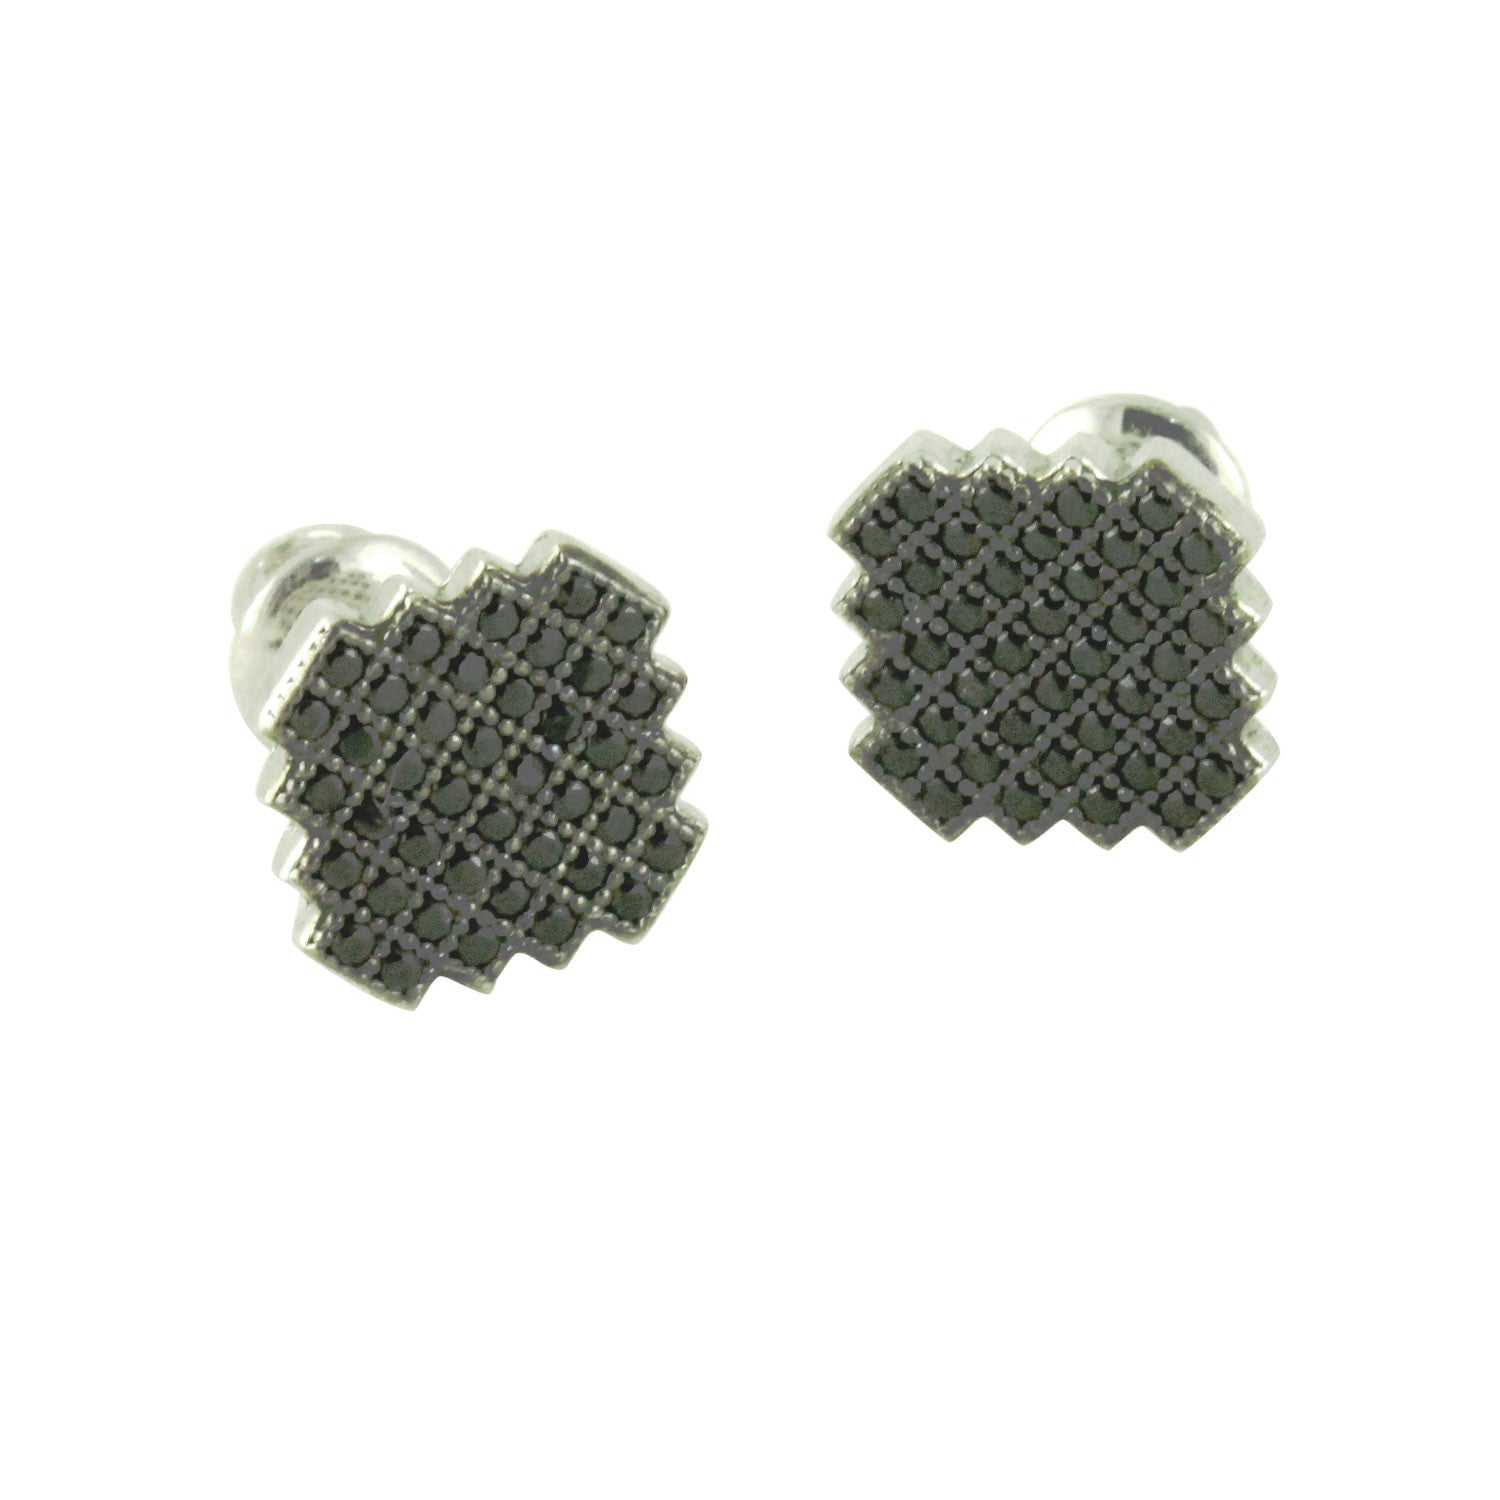 Blackened Silver Pave Cluster ScrewBack Stud Earrings